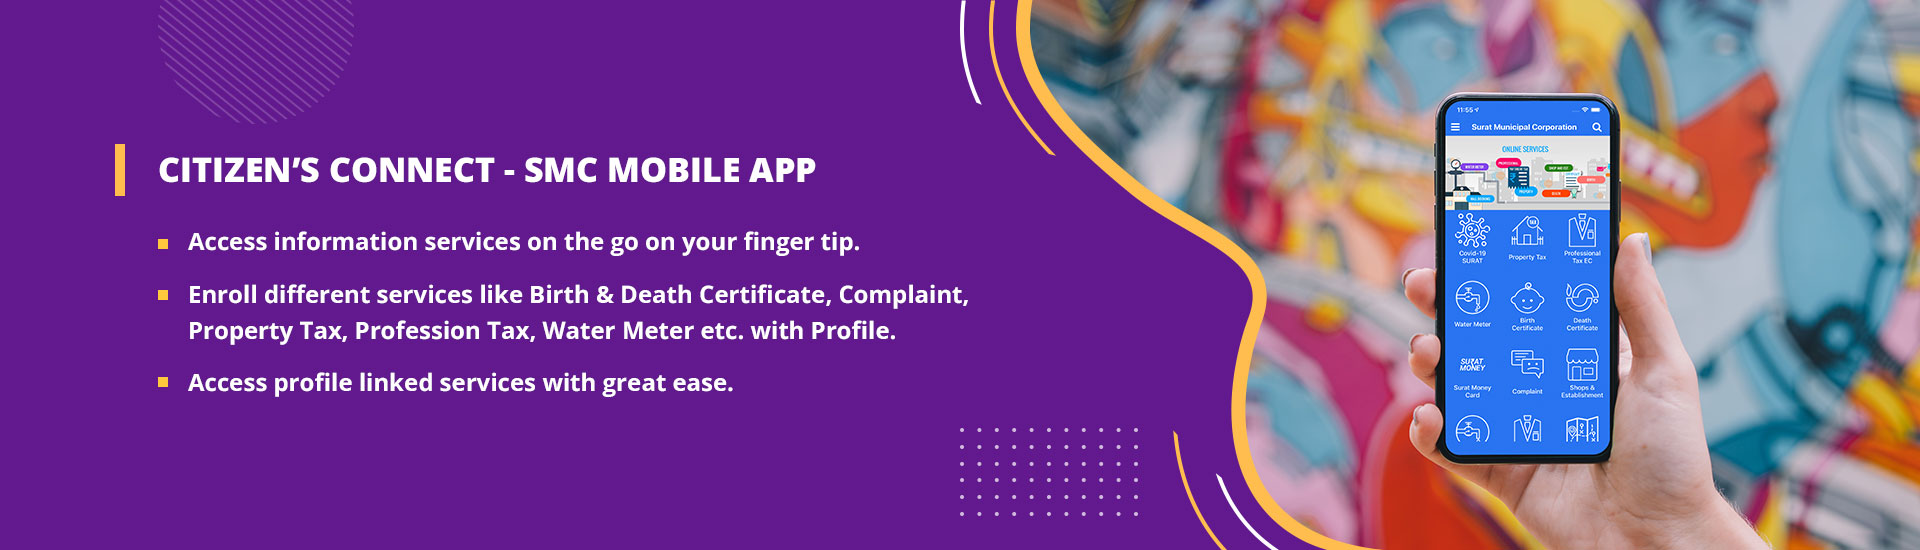 SMC Citizen Connect App